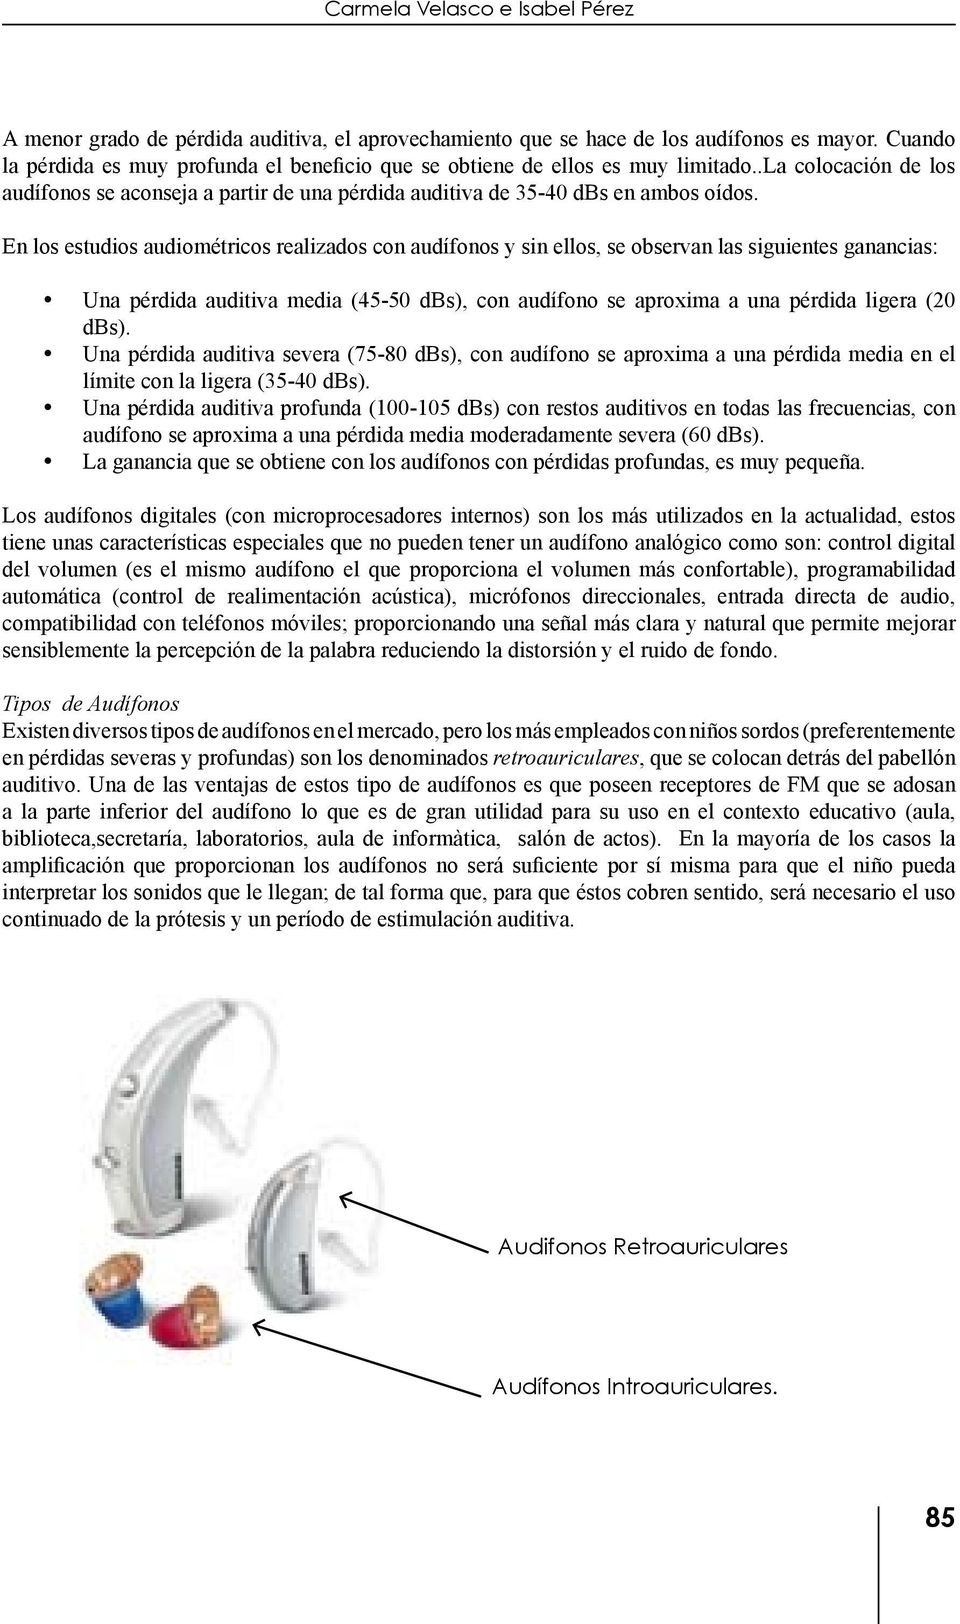 En los estudios audiométricos realizados con audífonos y sin ellos, se observan las siguientes ganancias: Una pérdida auditiva media (45-50 dbs), con audífono se aproxima a una pérdida ligera (20